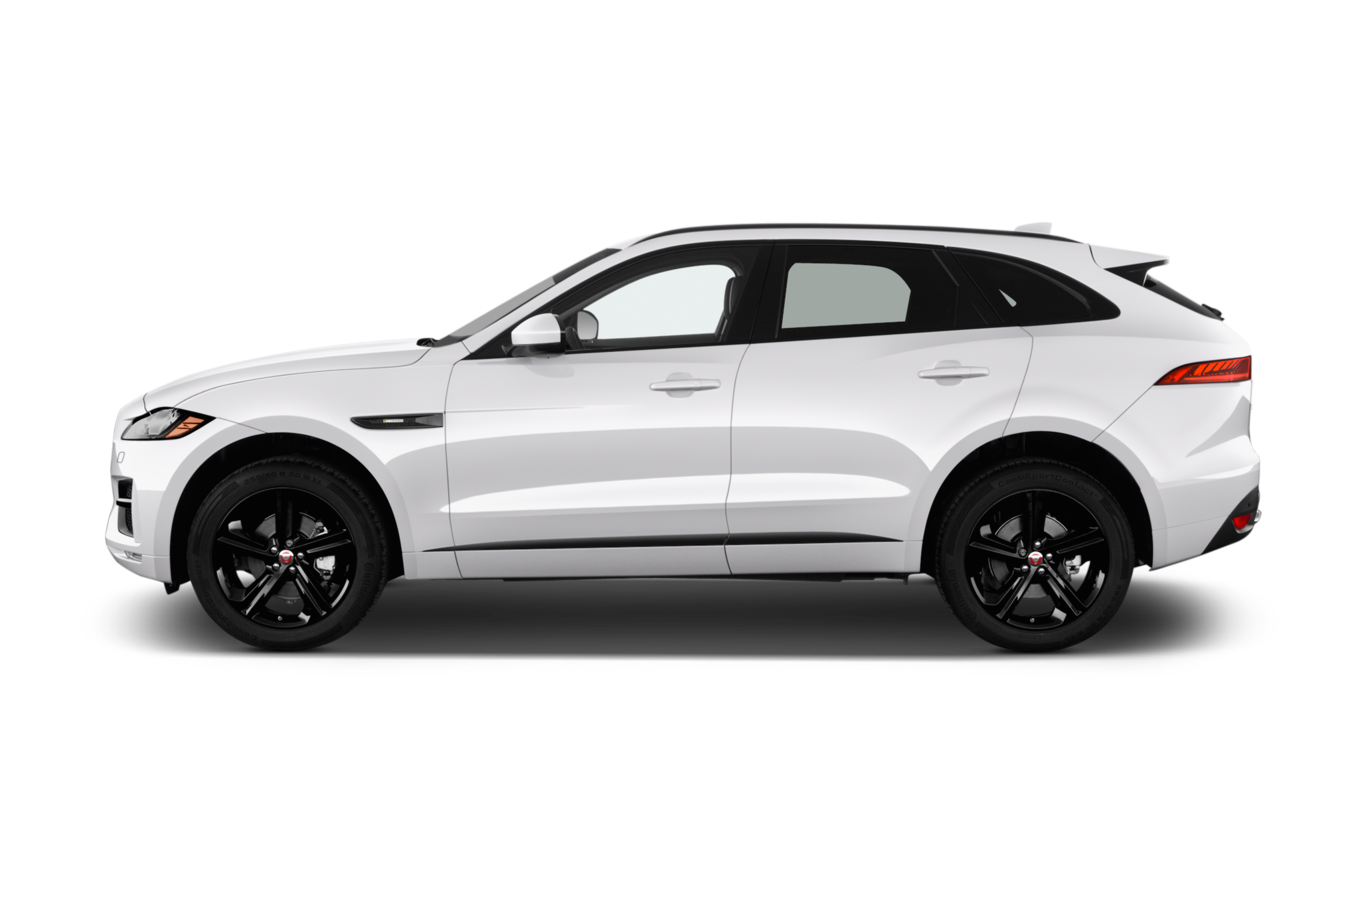 kisspng-2018-jaguar-f-pace-jaguar-cars-sport-utility-vehic-5aecf69b8722d2.0739210415254790675535.png